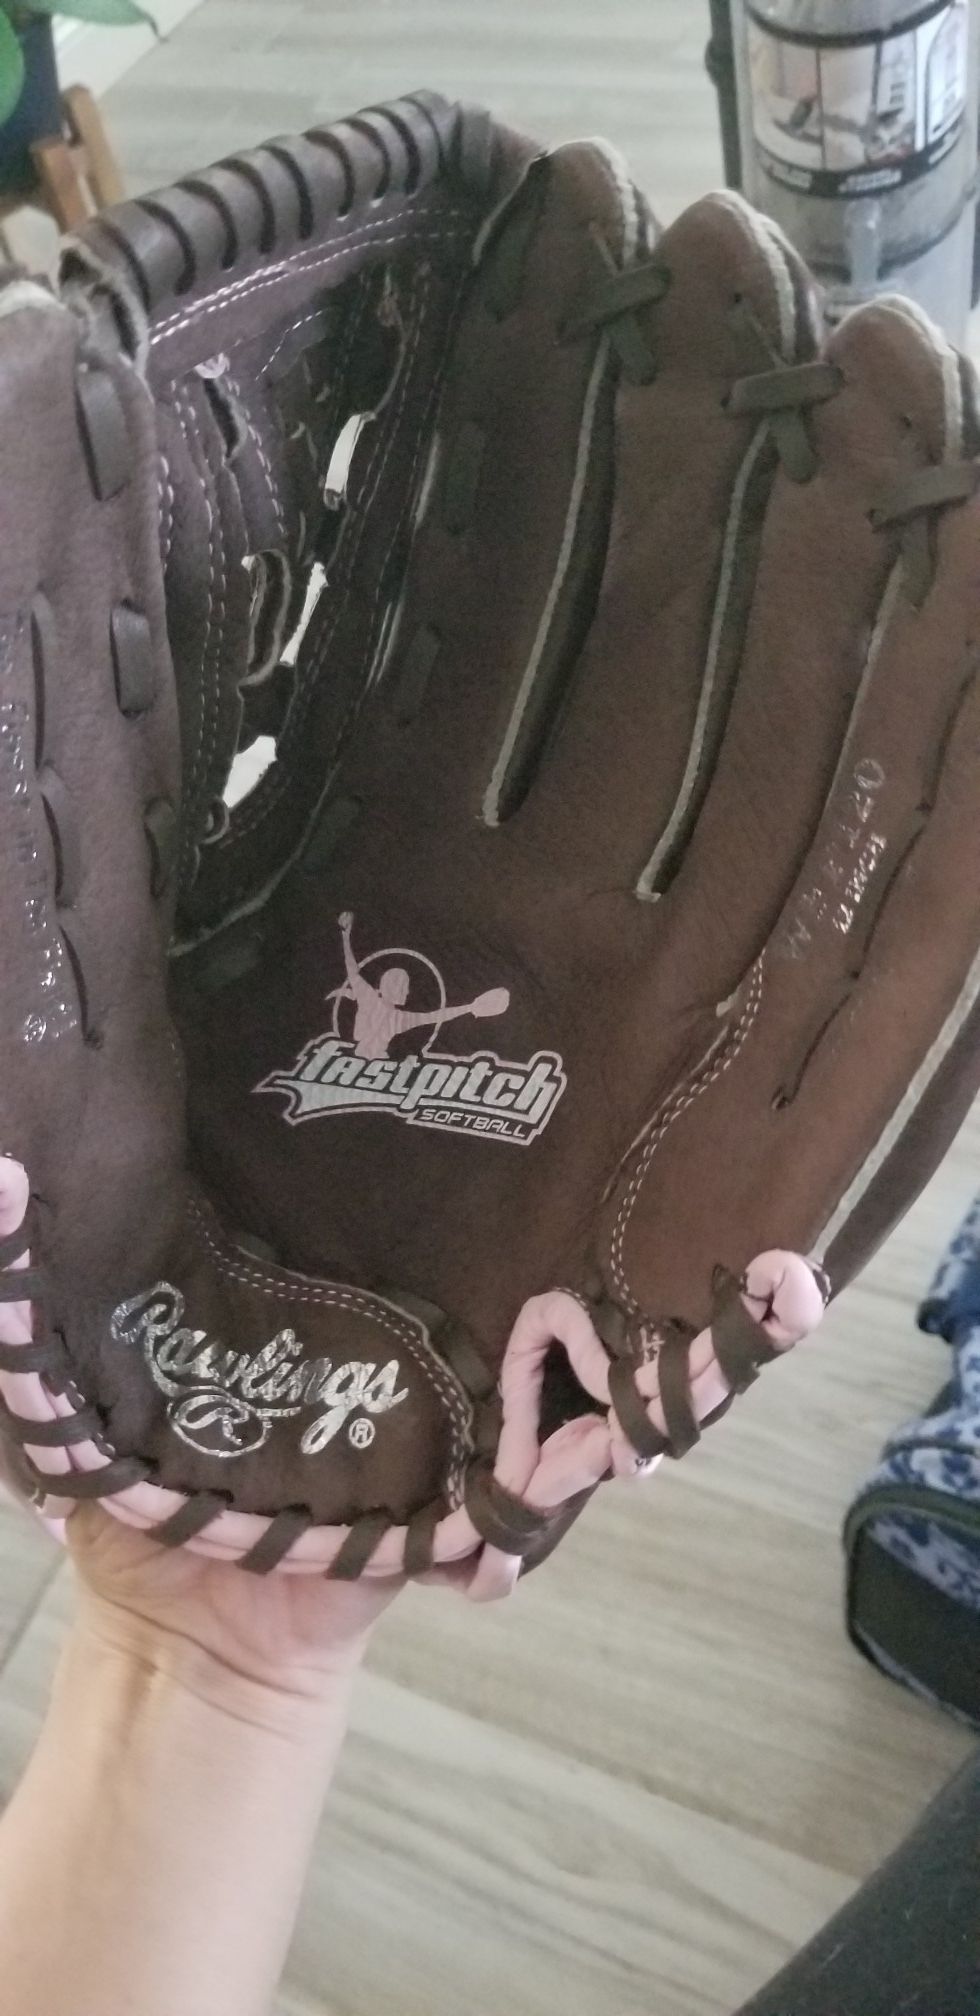 Baseball glove 12 inch